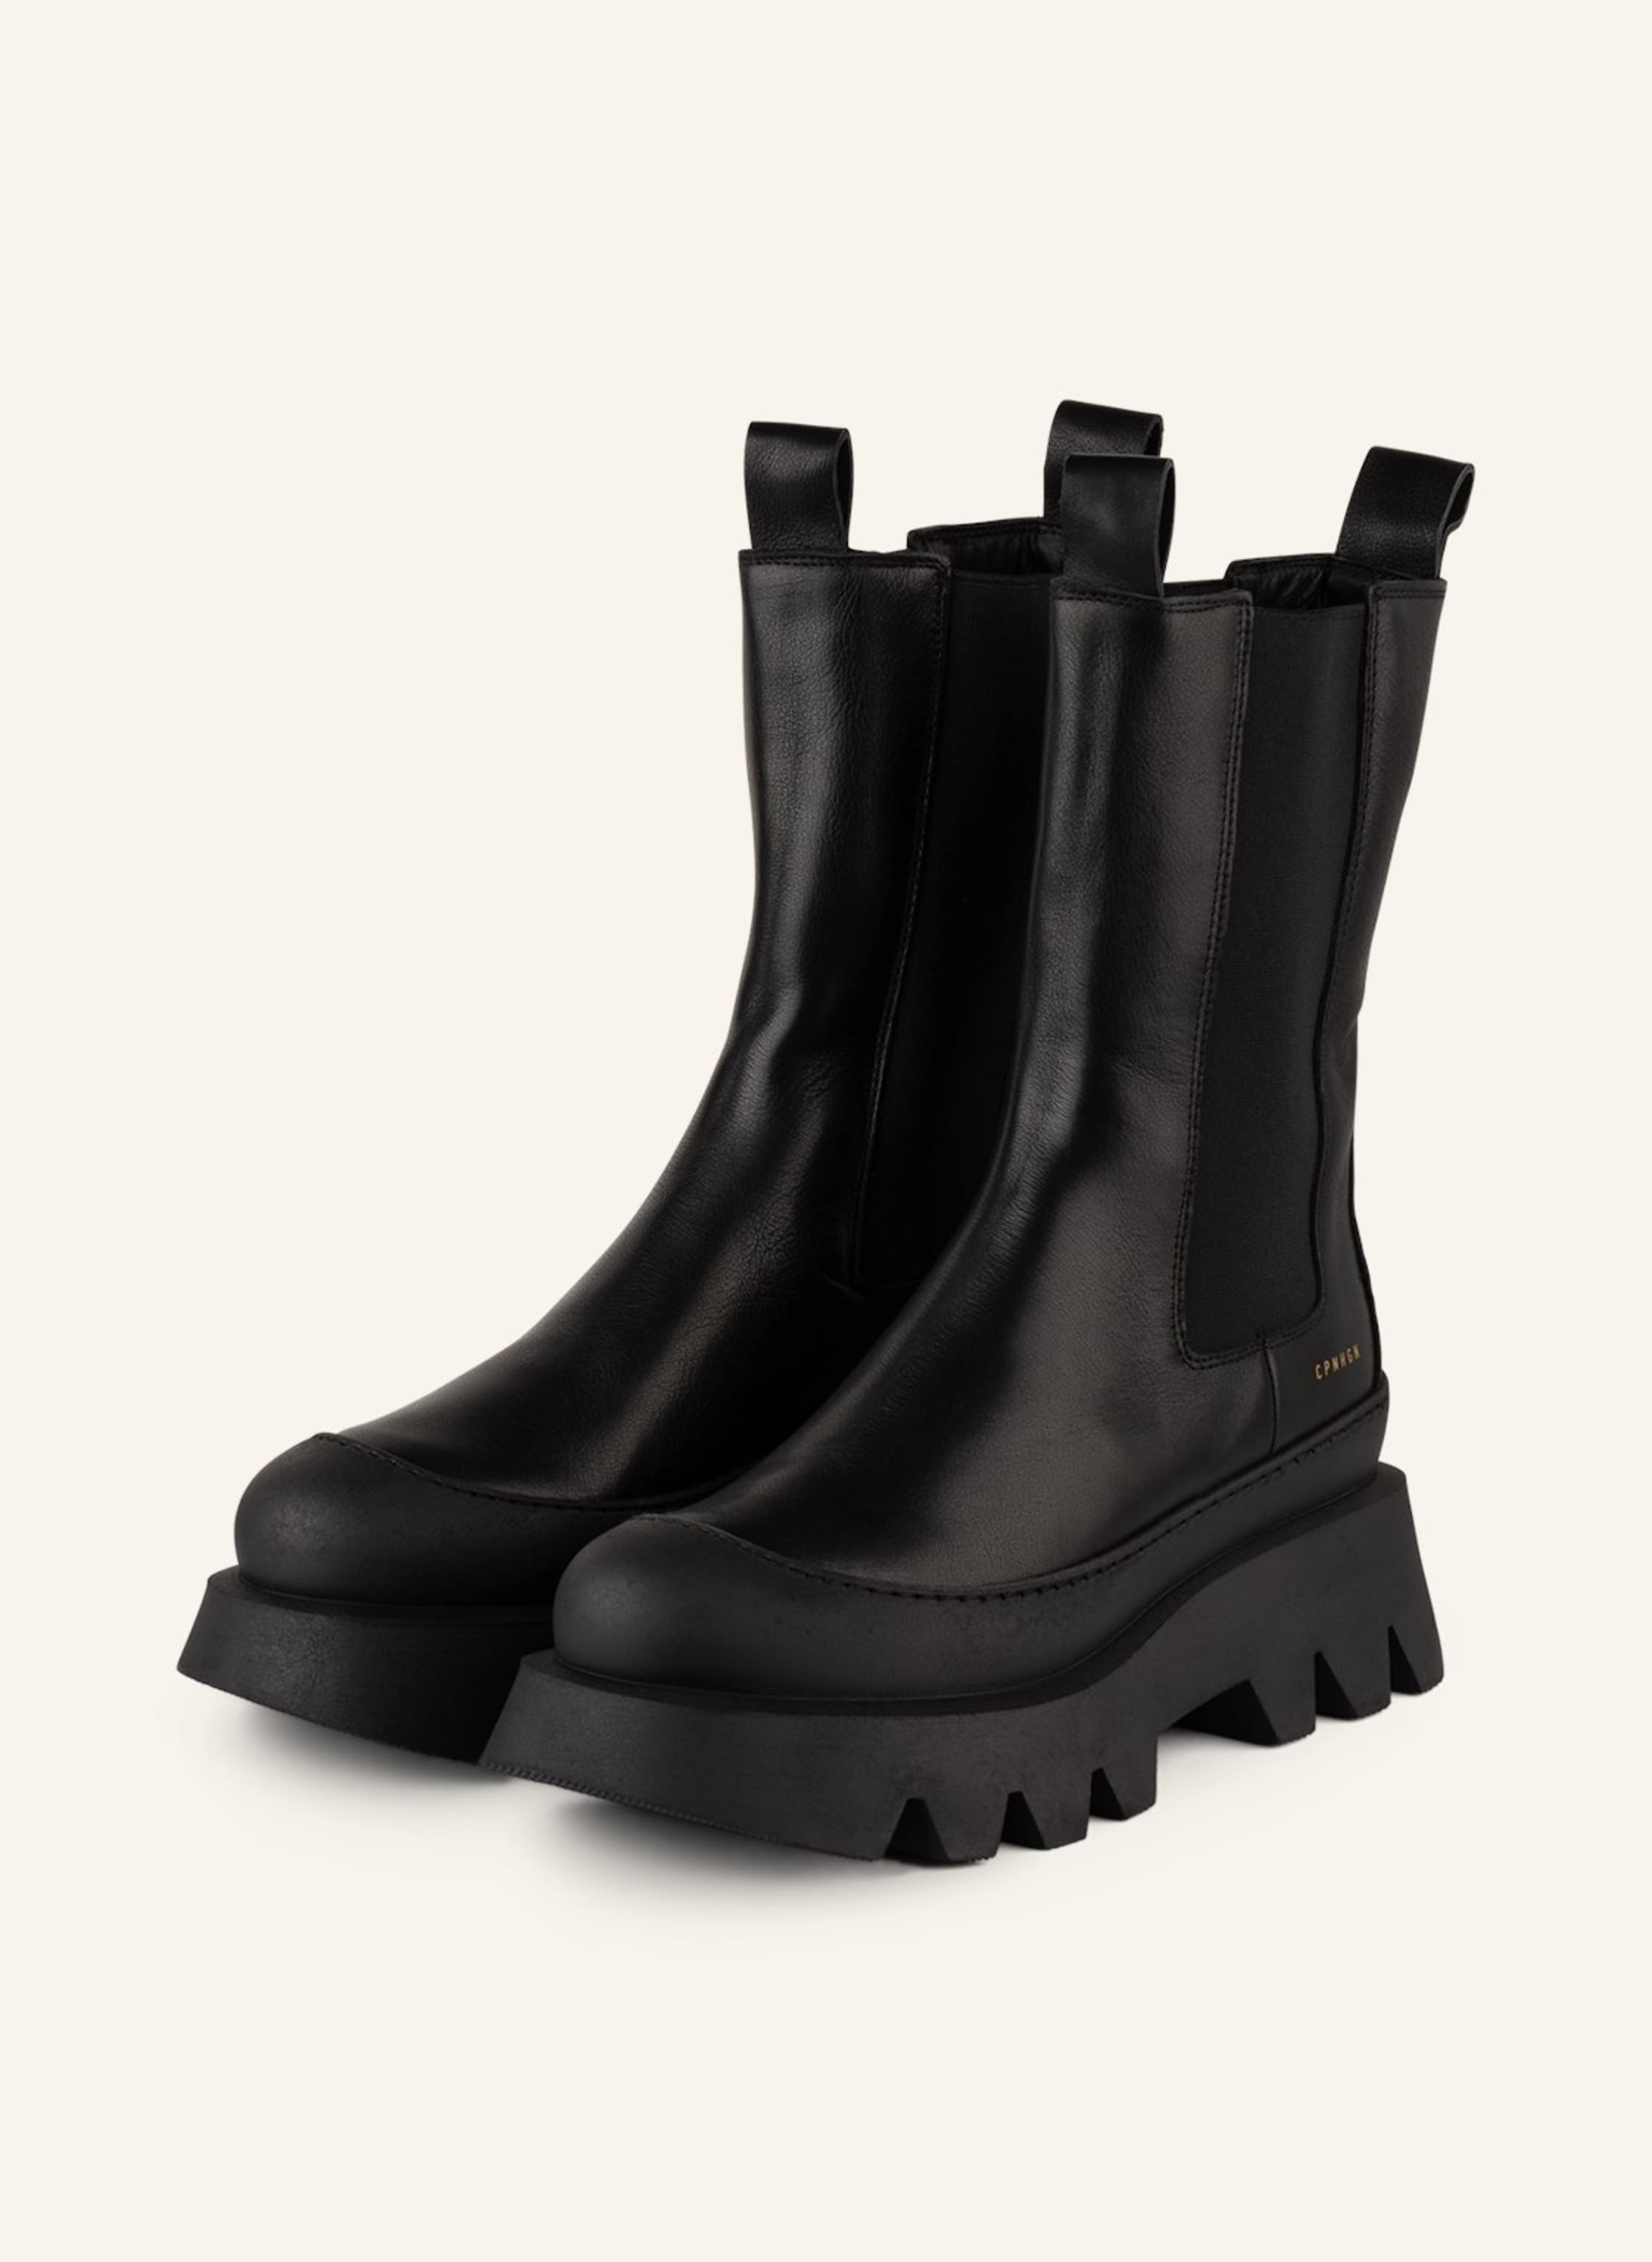 COPENHAGEN boots CPH780 in black | Breuninger